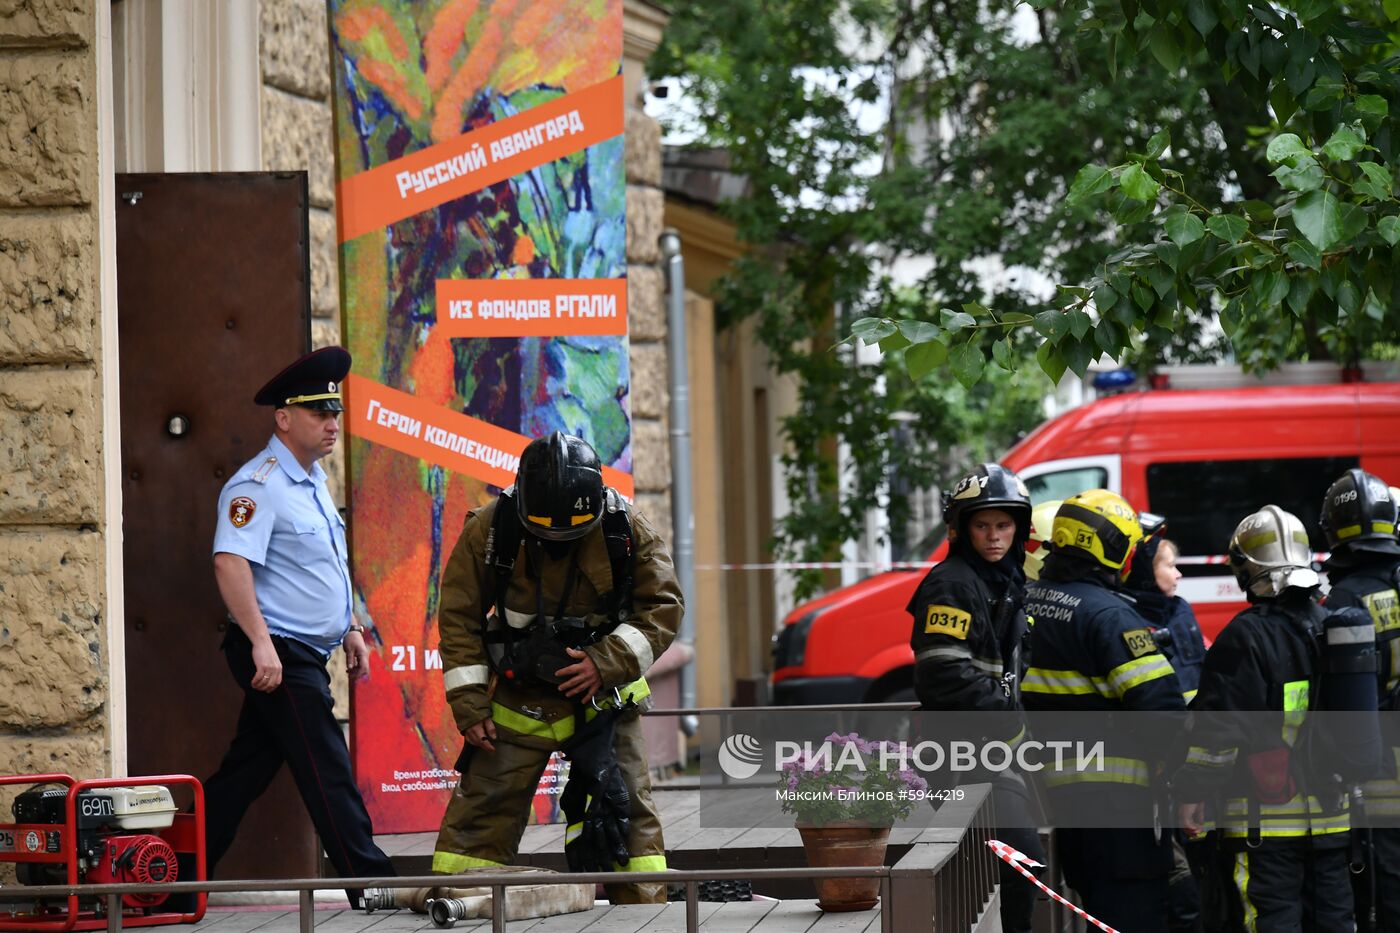 Пожар произошел в Российском государственном архиве литературы и искусства